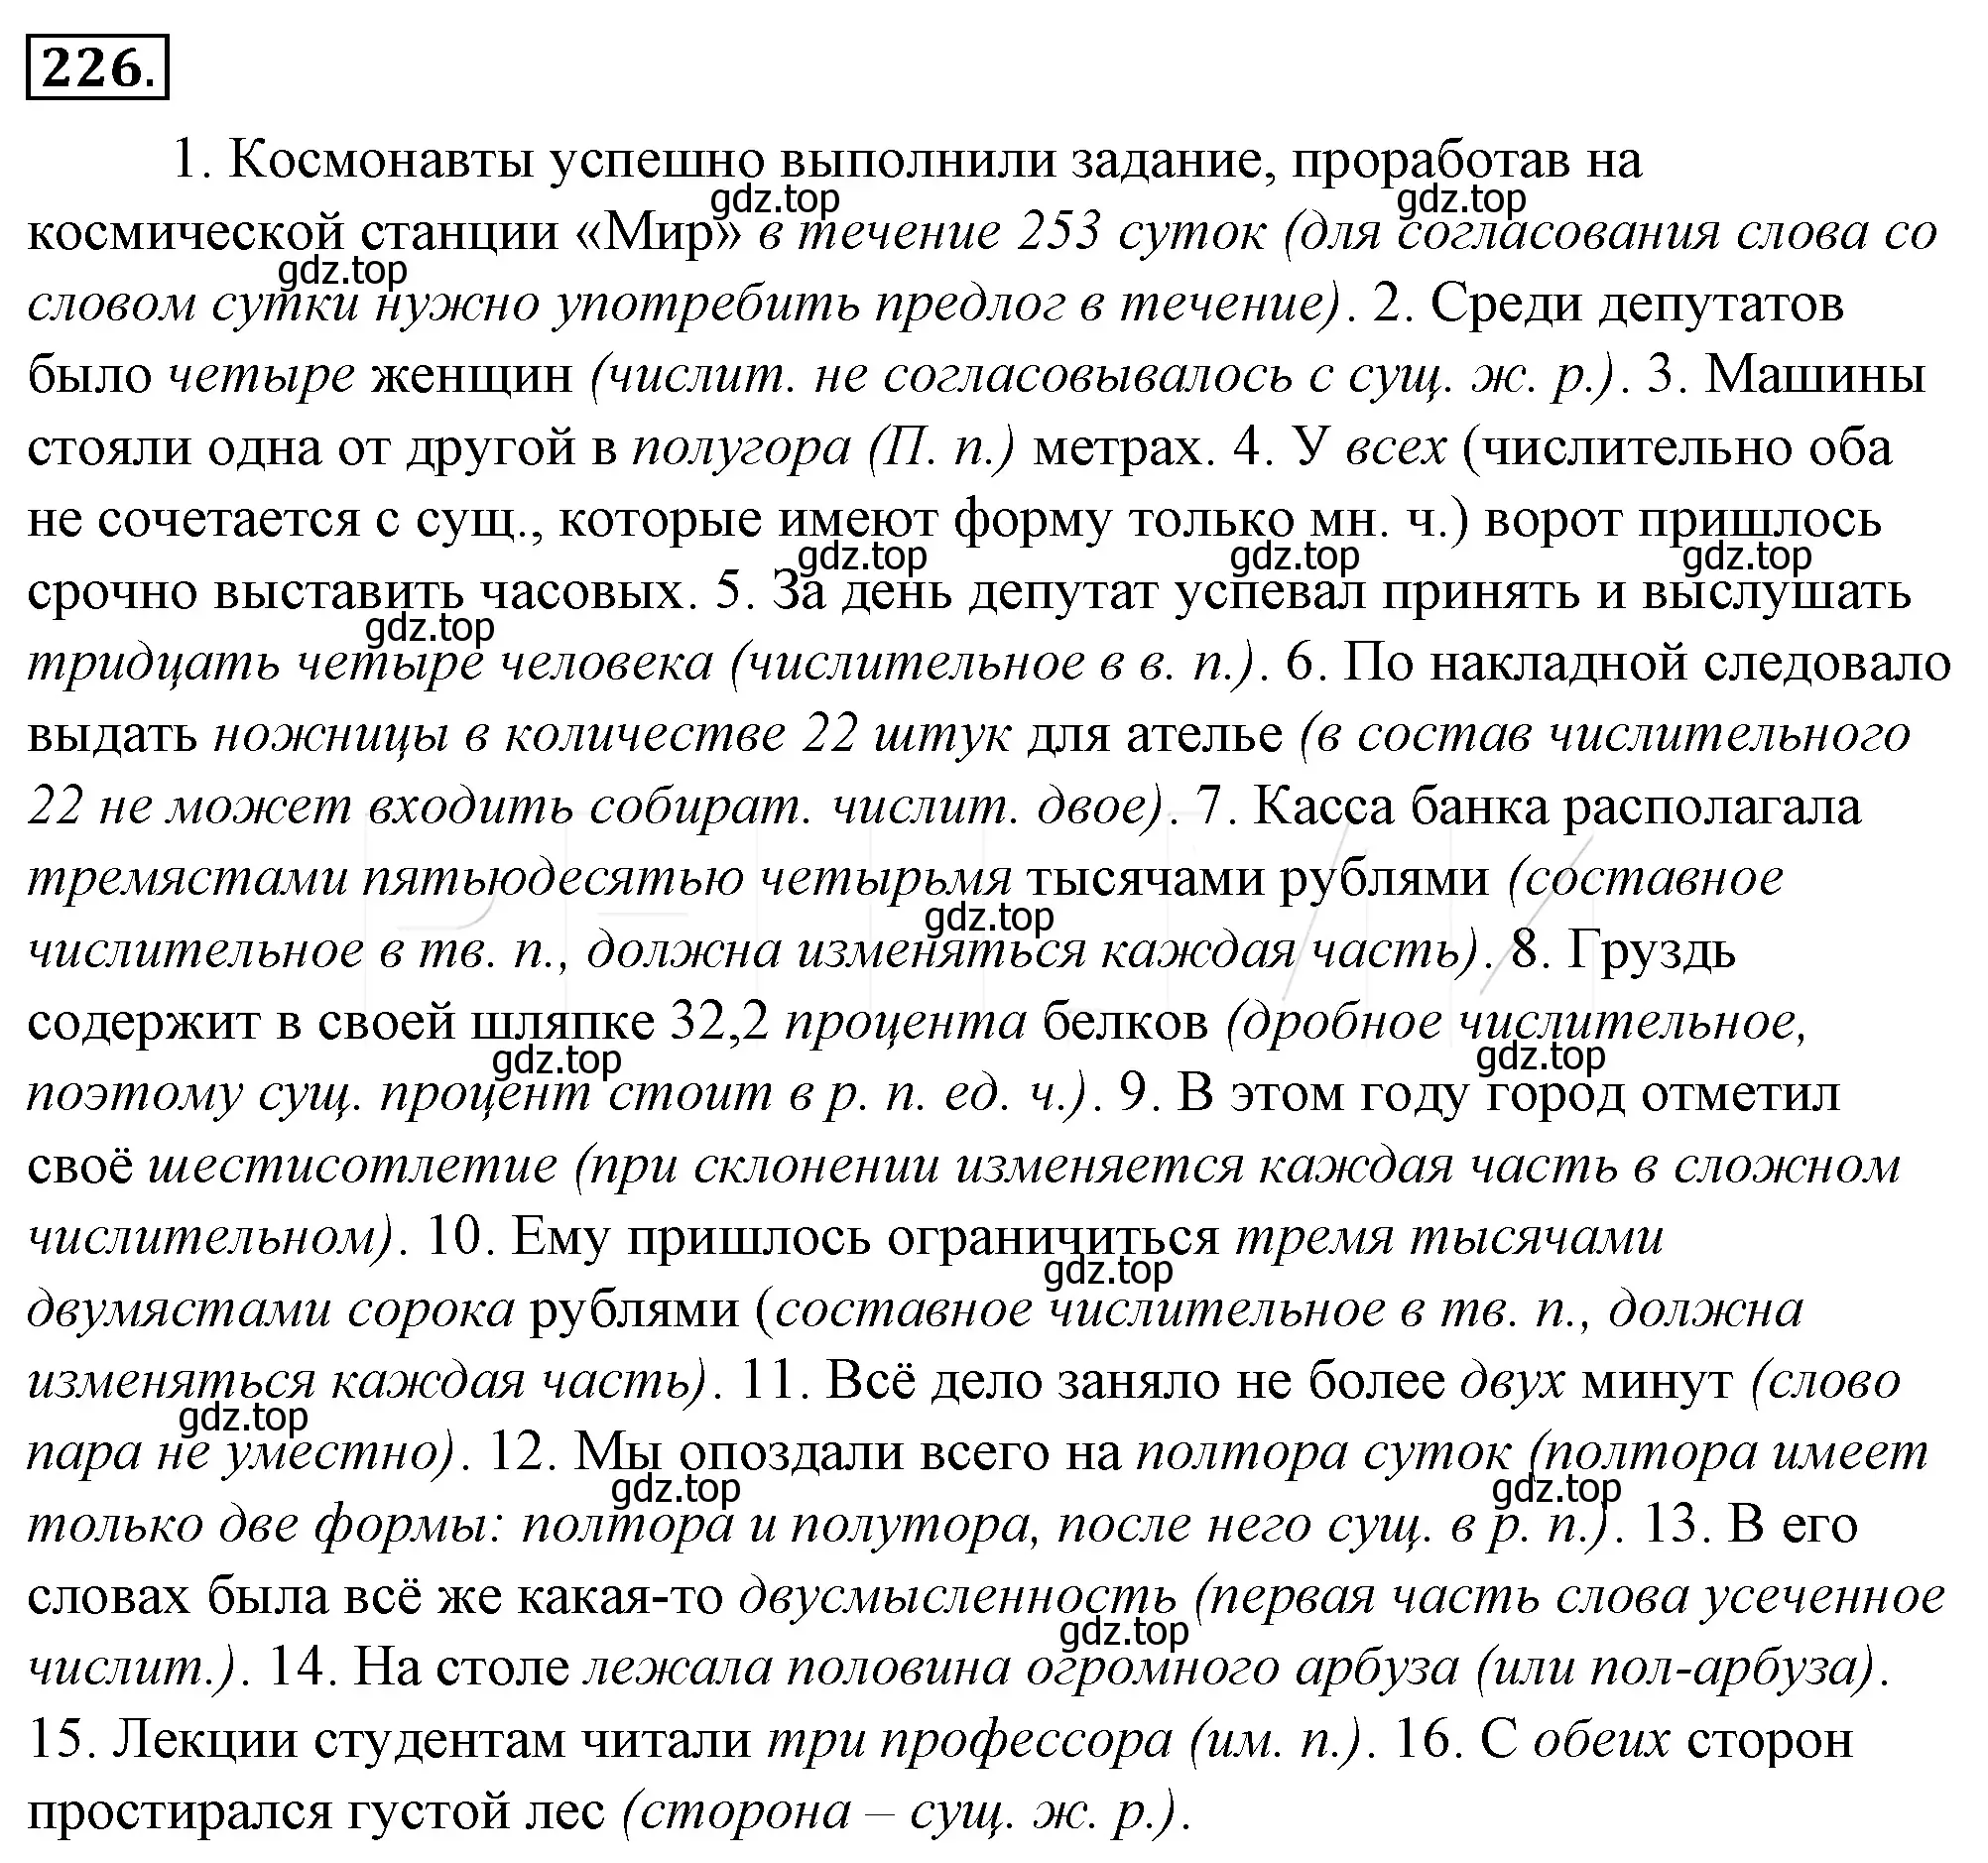 Решение 4. номер 250 (страница 233) гдз по русскому языку 10-11 класс Гольцова, Шамшин, учебник 1 часть